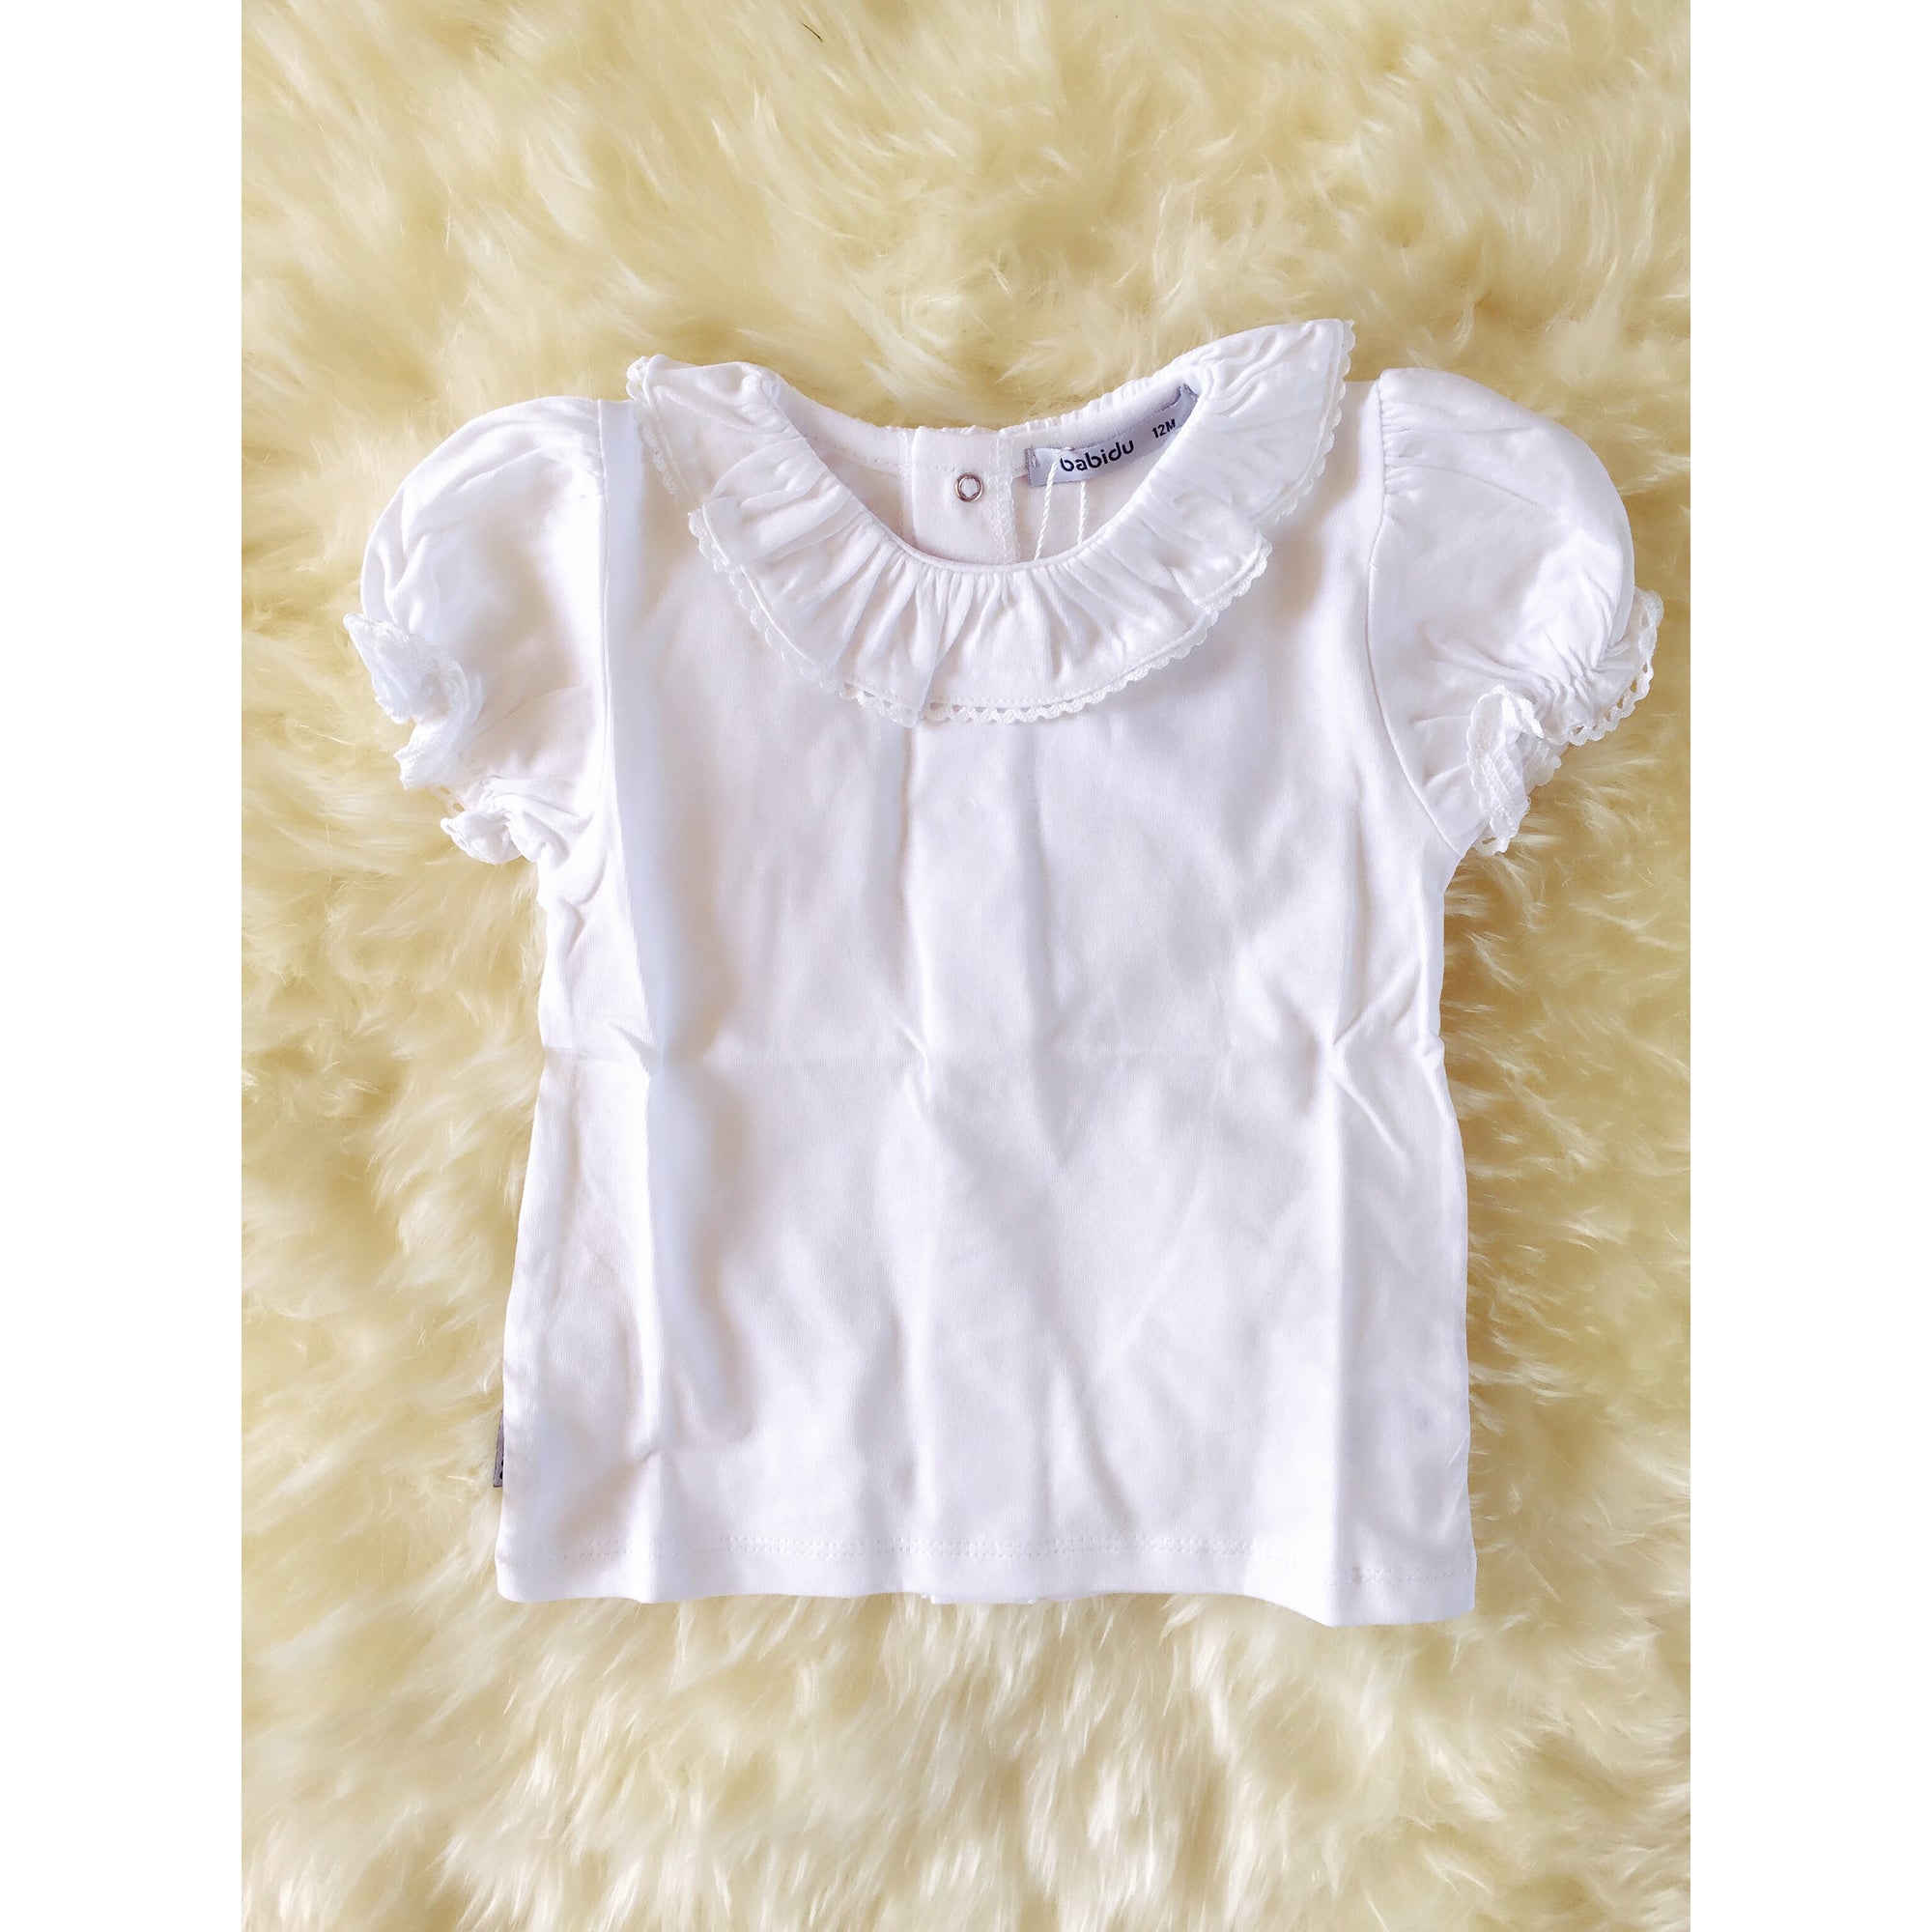 Plain White Short Sleeve Frill blouse